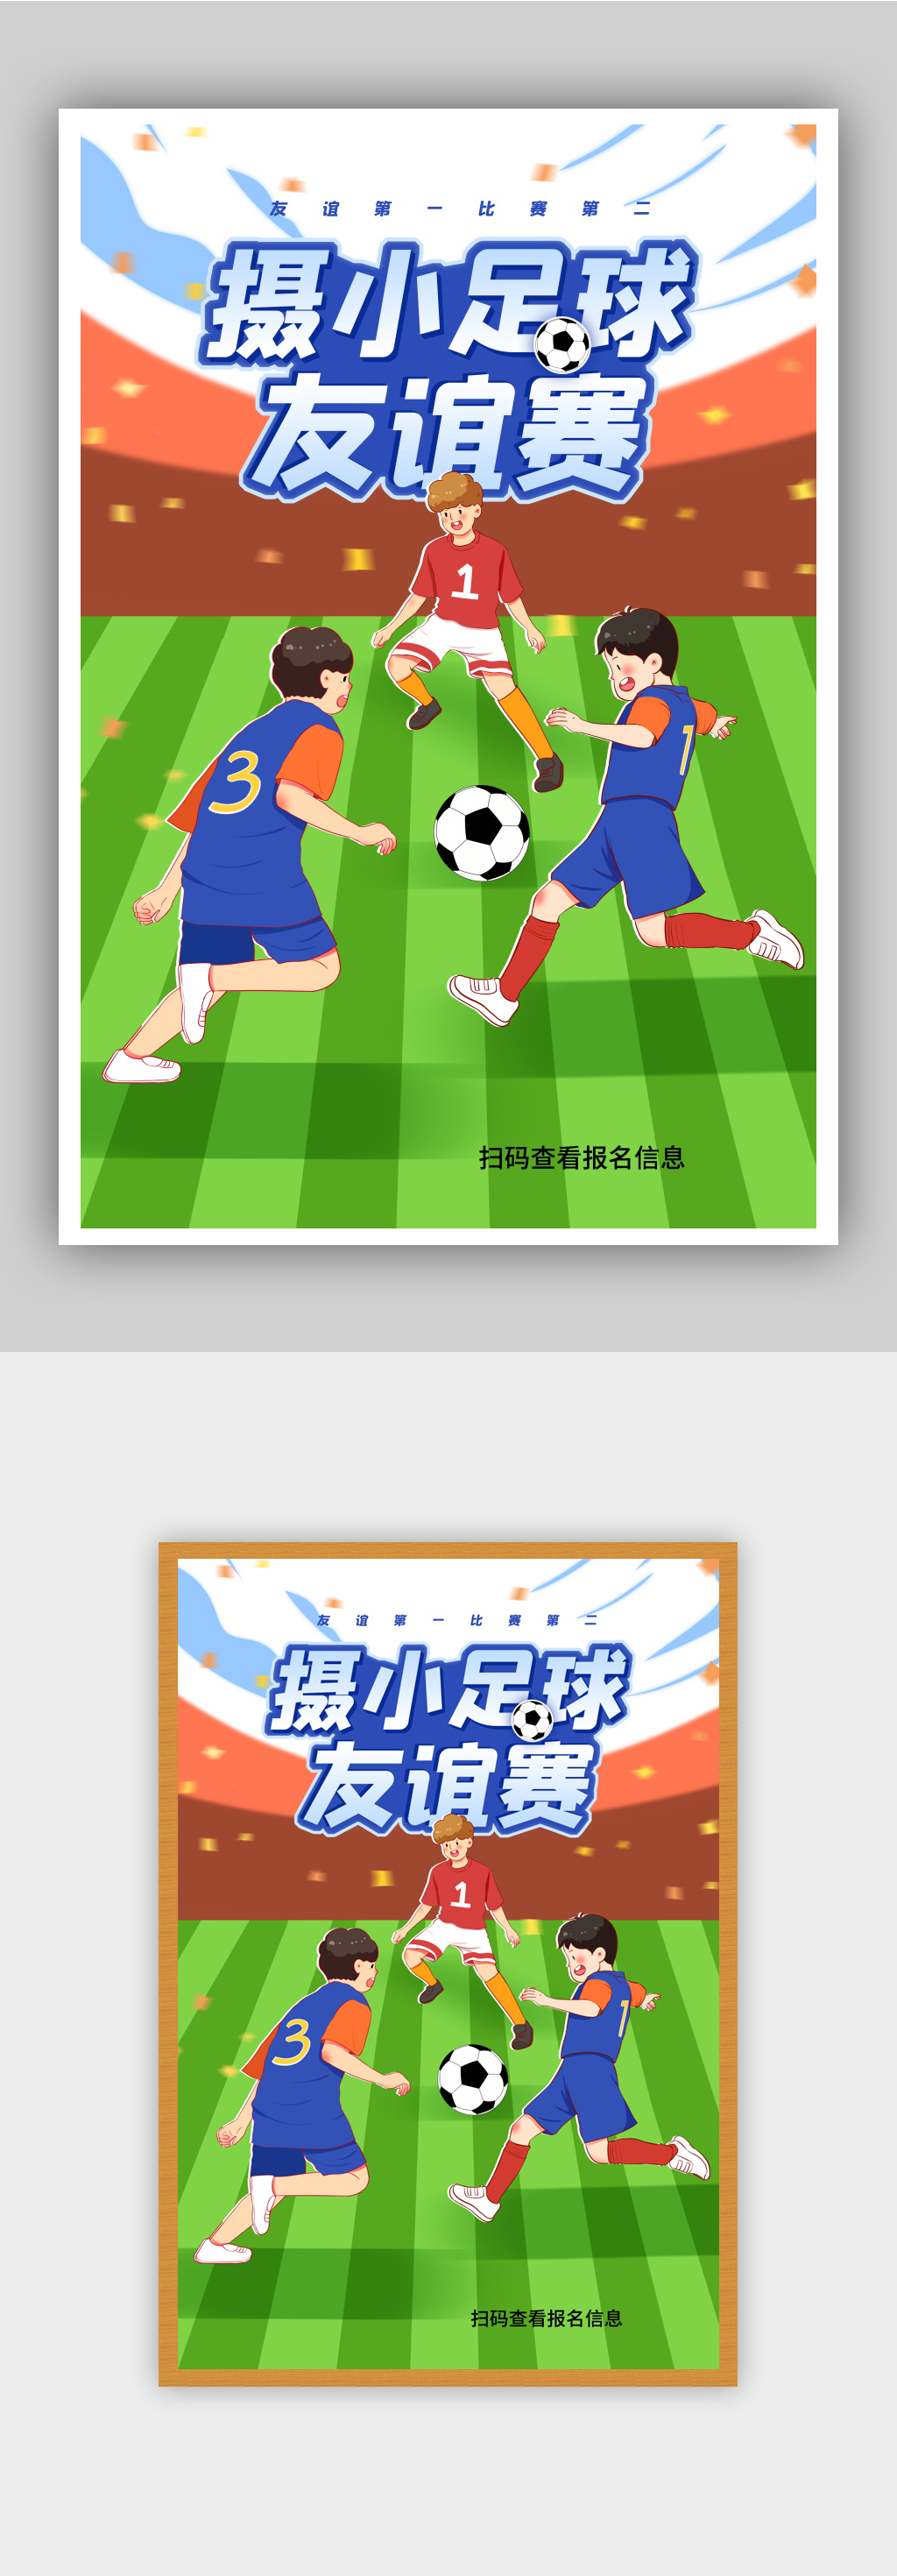 通小学足球友谊比赛宣传海报